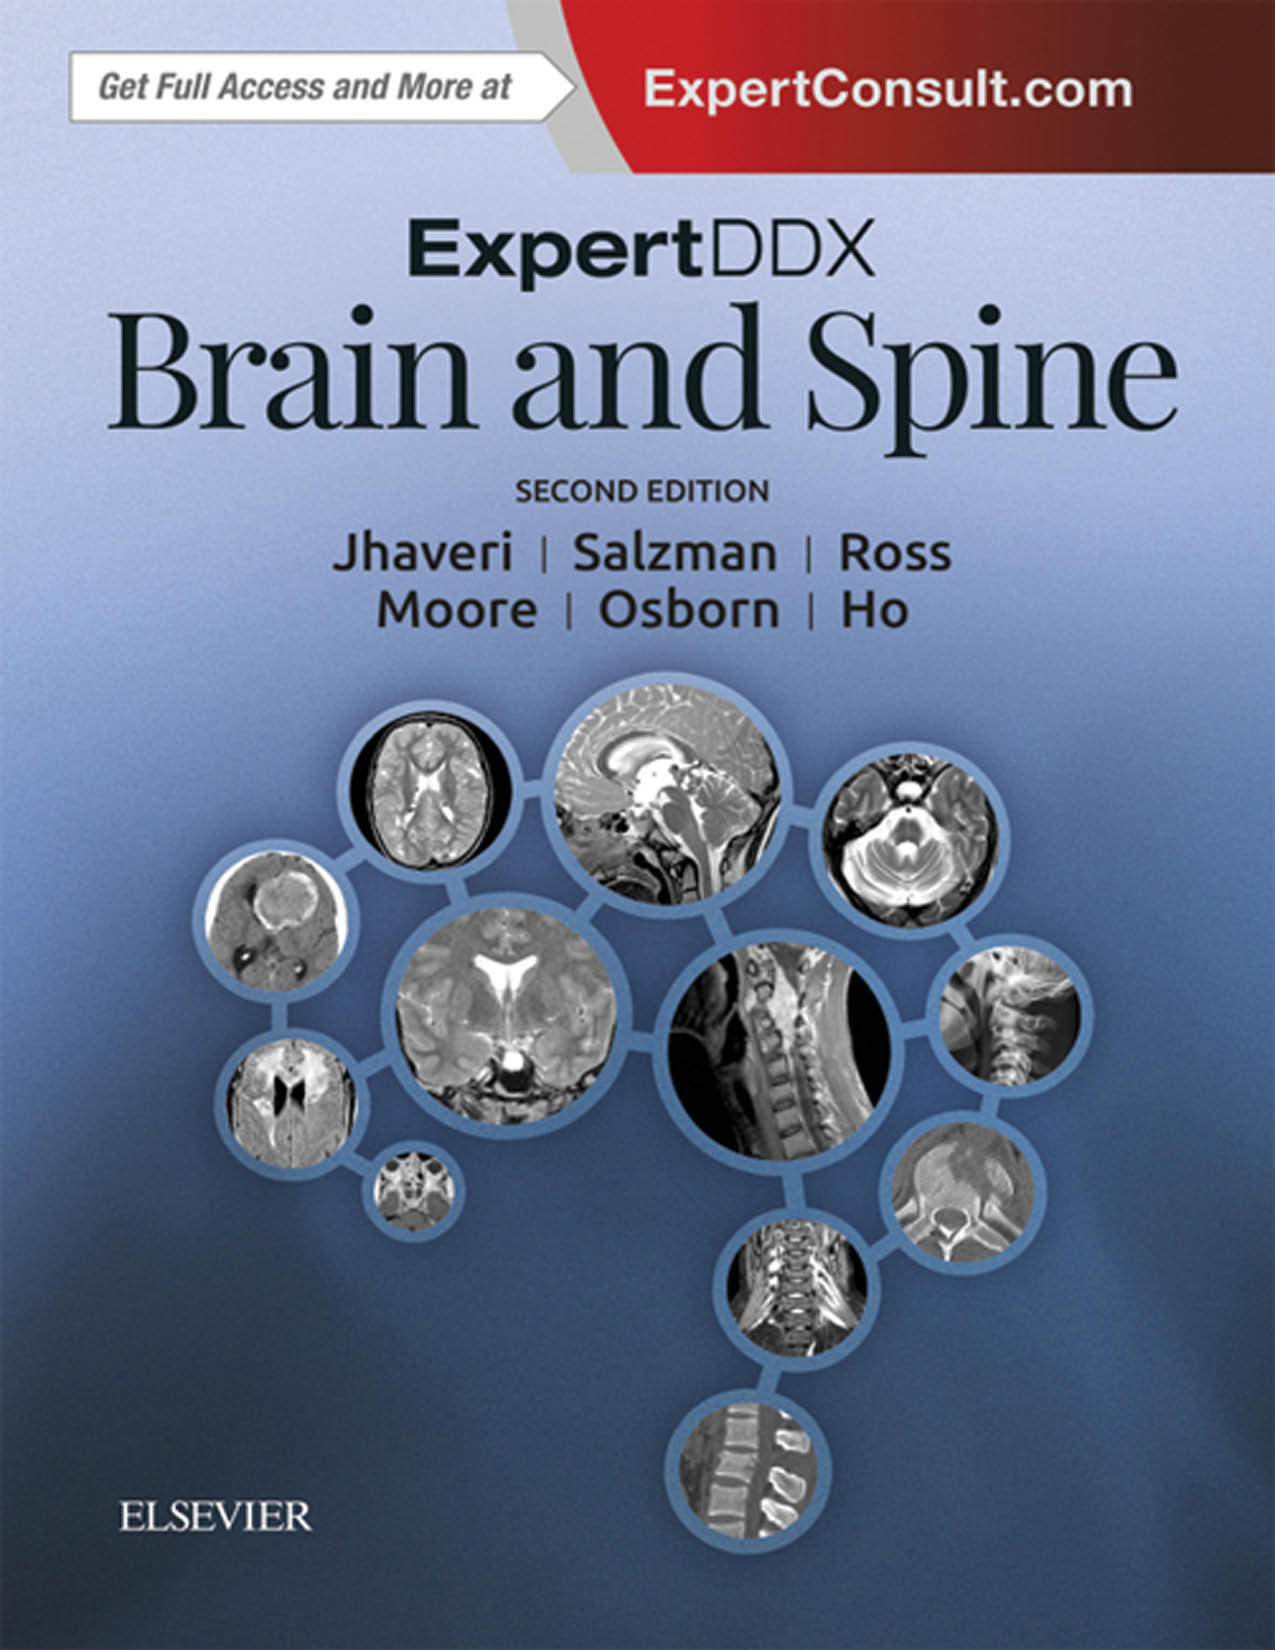 页面提取自－[lib99.net]_ExpertDDx Brain and Spine E-Book-old.jpg